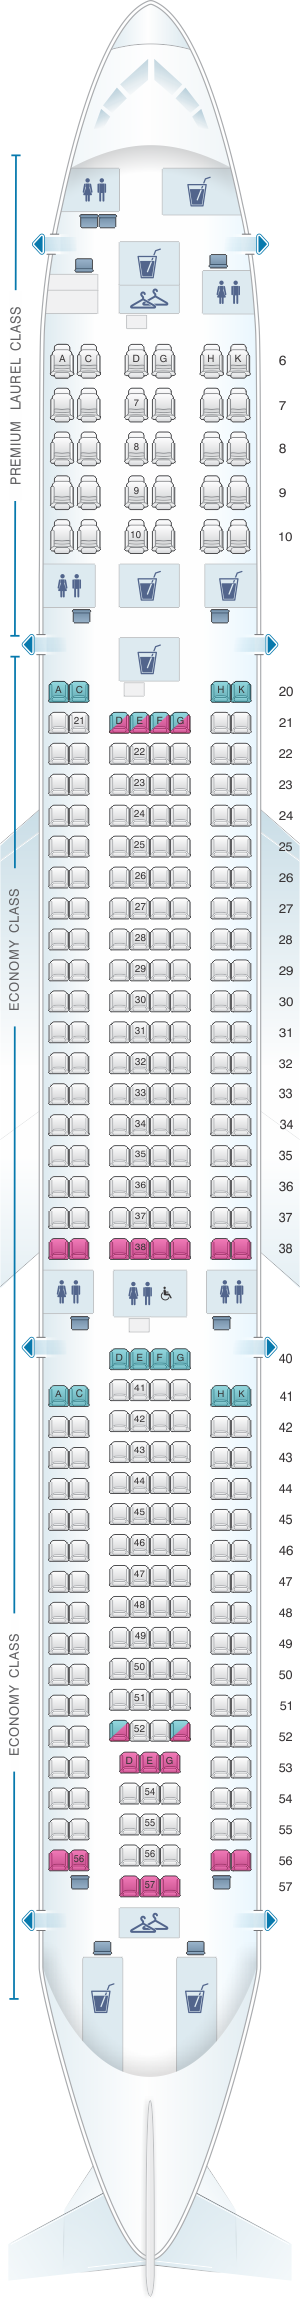 Eva Air A330 Seat Map